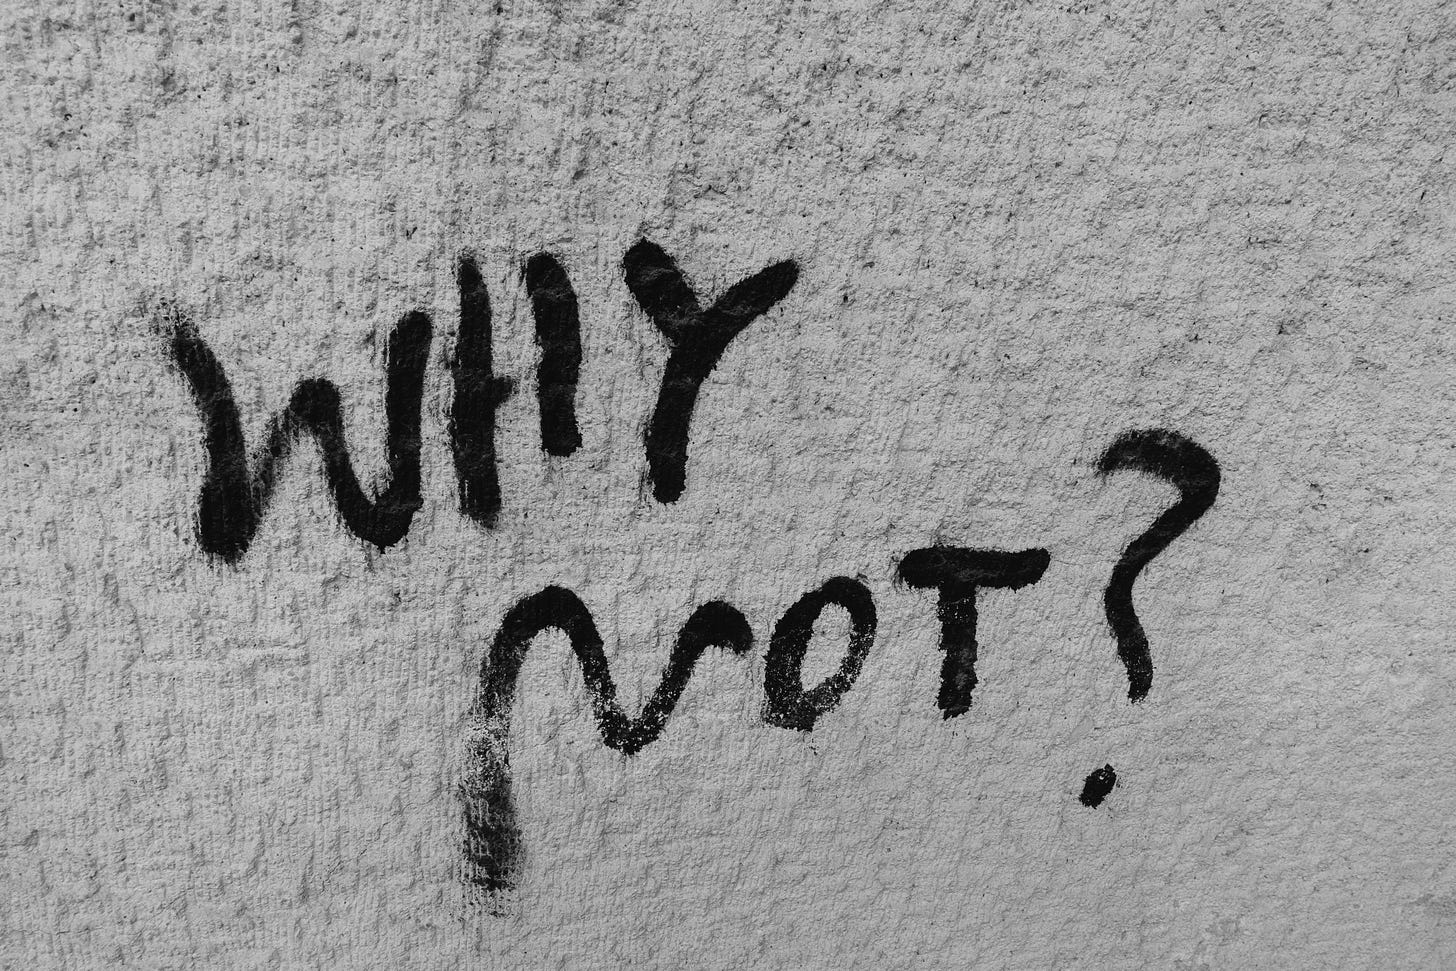 le parole why not? tracciate in vernice nera su un muro bianco